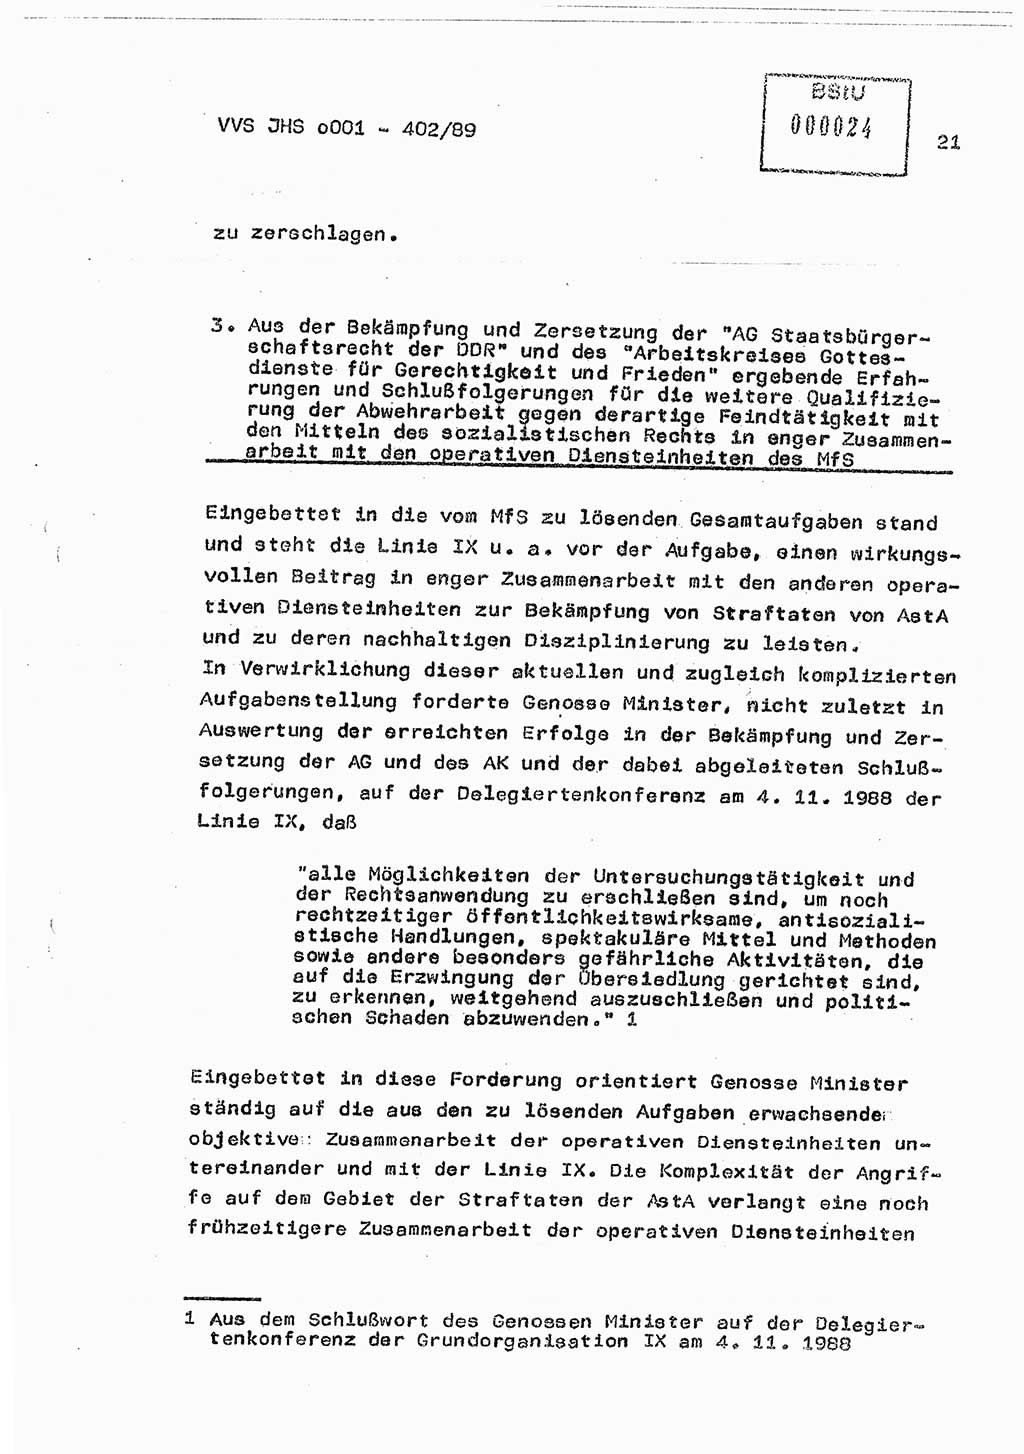 Diplomarbeit Major Günter Müller (HA Ⅸ/9), Ministerium für Staatssicherheit (MfS) [Deutsche Demokratische Republik (DDR)], Juristische Hochschule (JHS), Vertrauliche Verschlußsache (VVS) o001-402/89, Potsdam 1989, Seite 21 (Dipl.-Arb. MfS DDR JHS VVS o001-402/89 1989, S. 21)